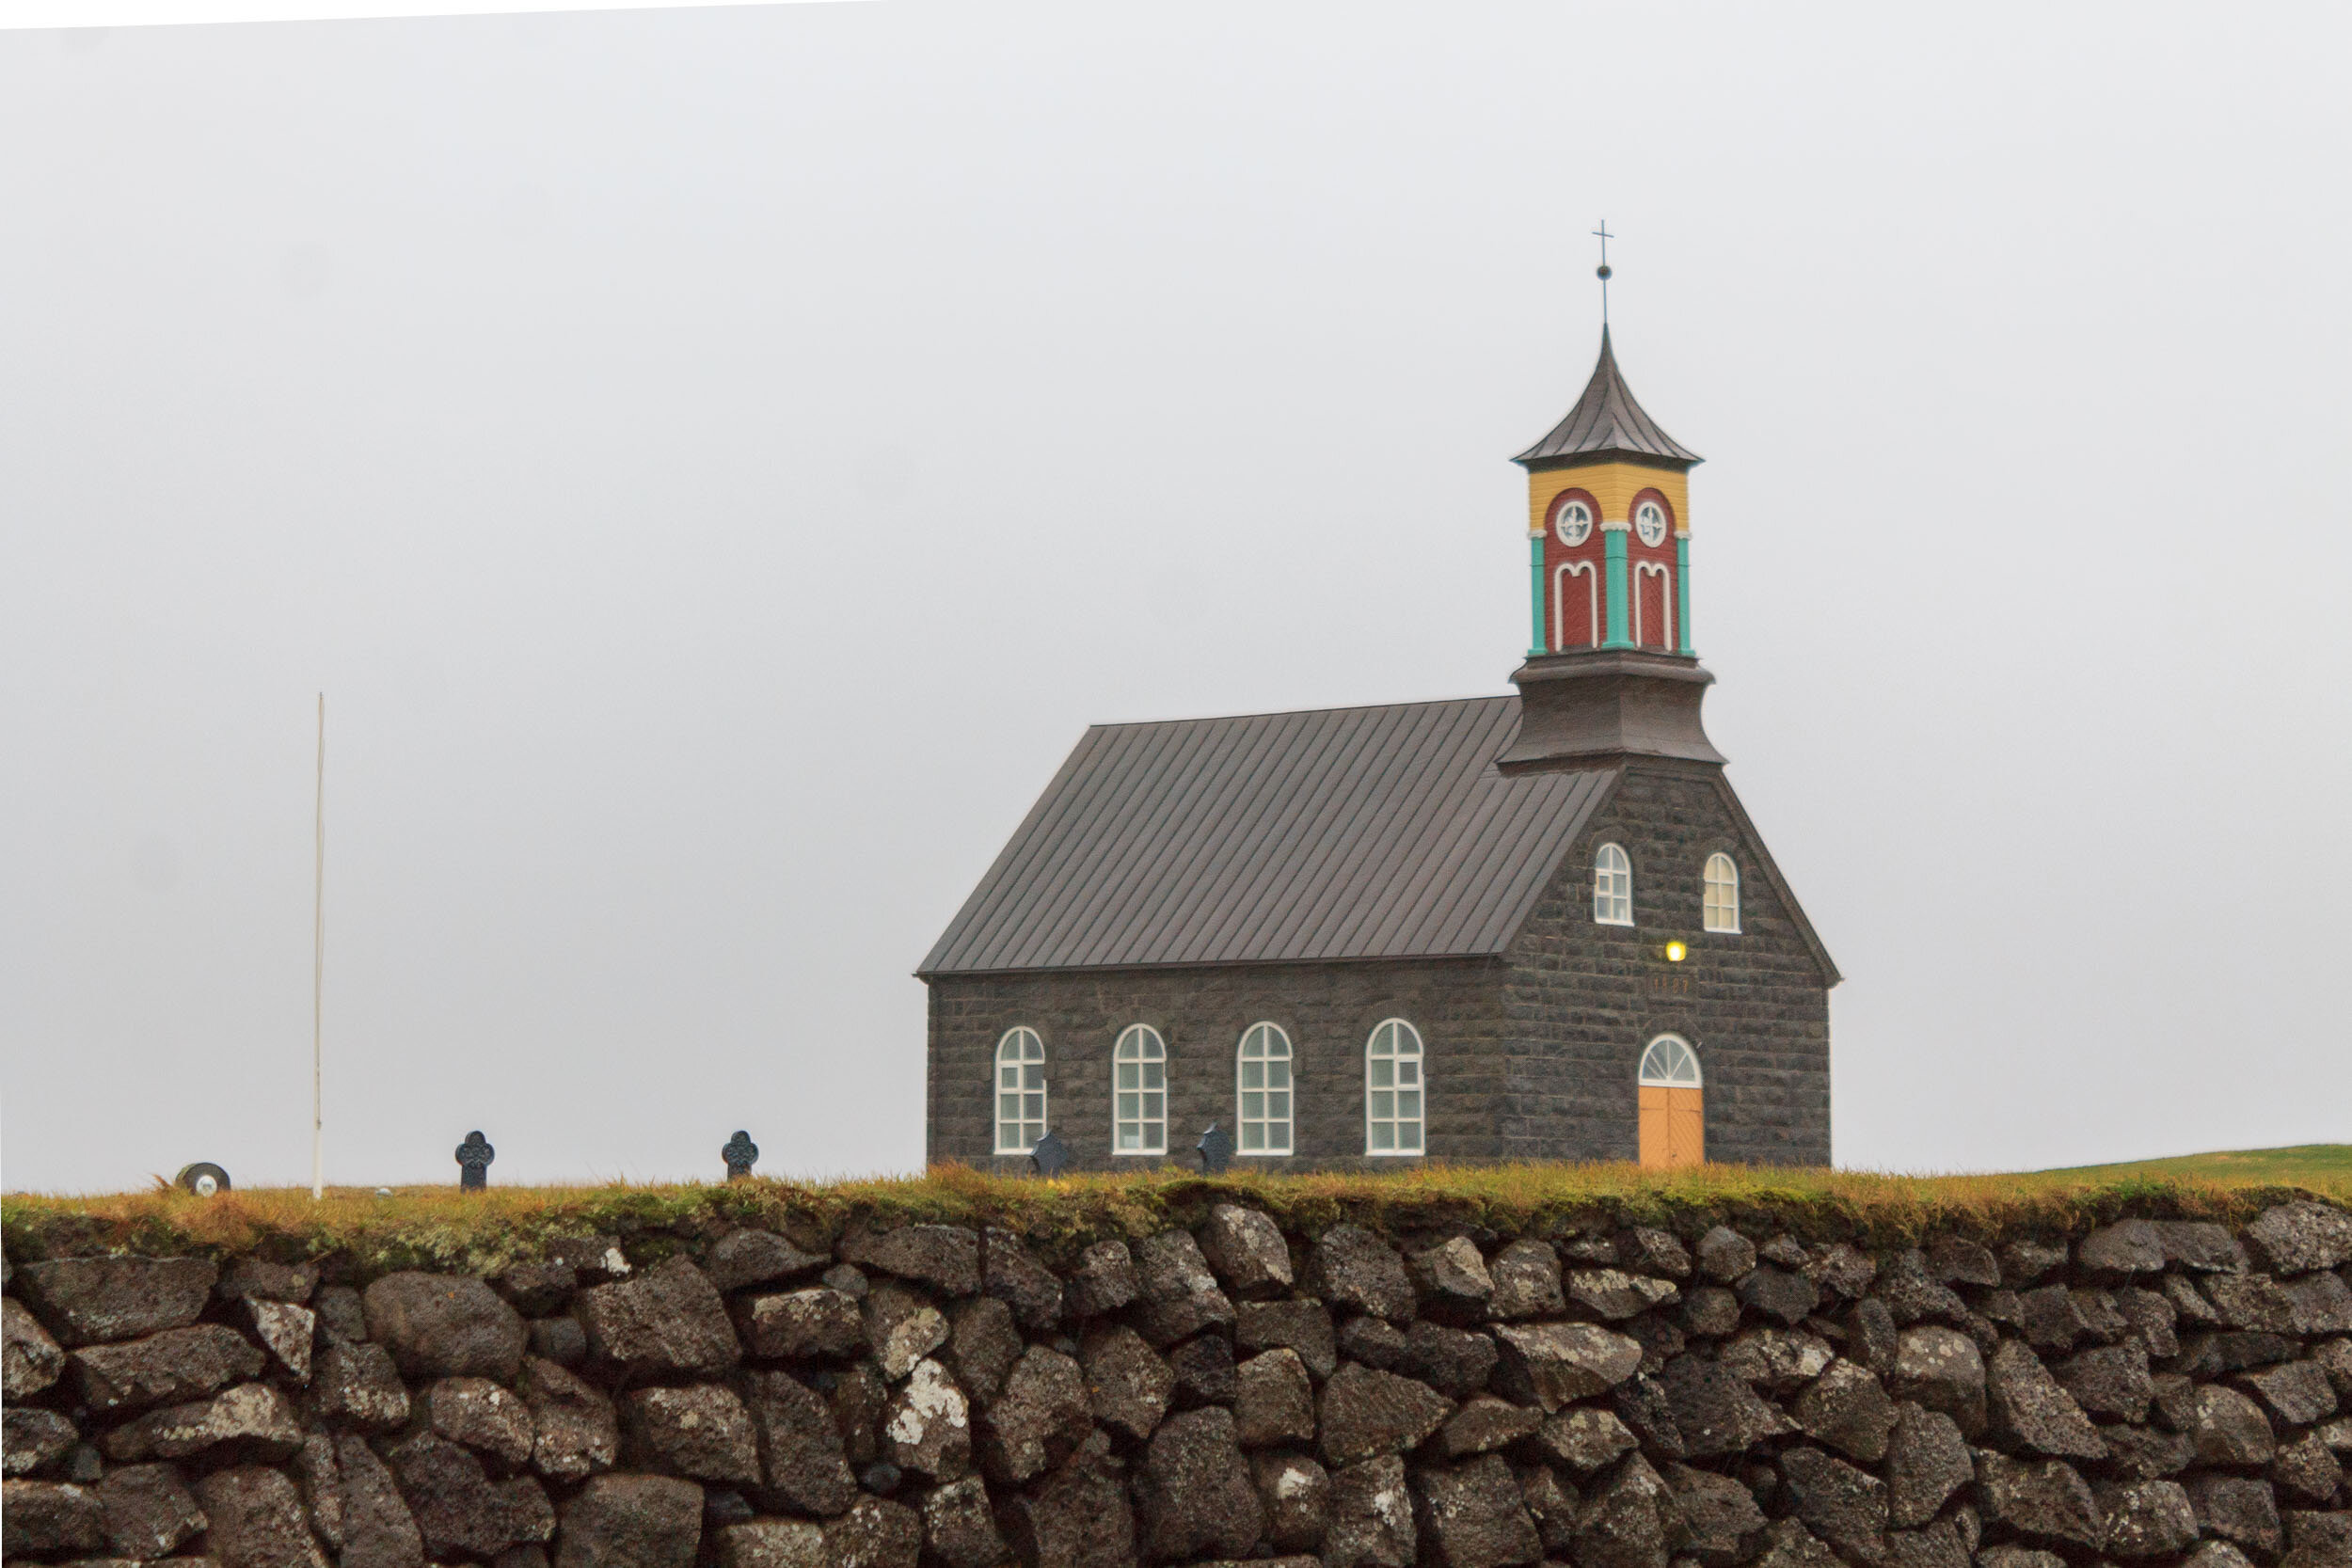 Hvalsneskirkja Church, Reykjanes Peninsula, Iceland